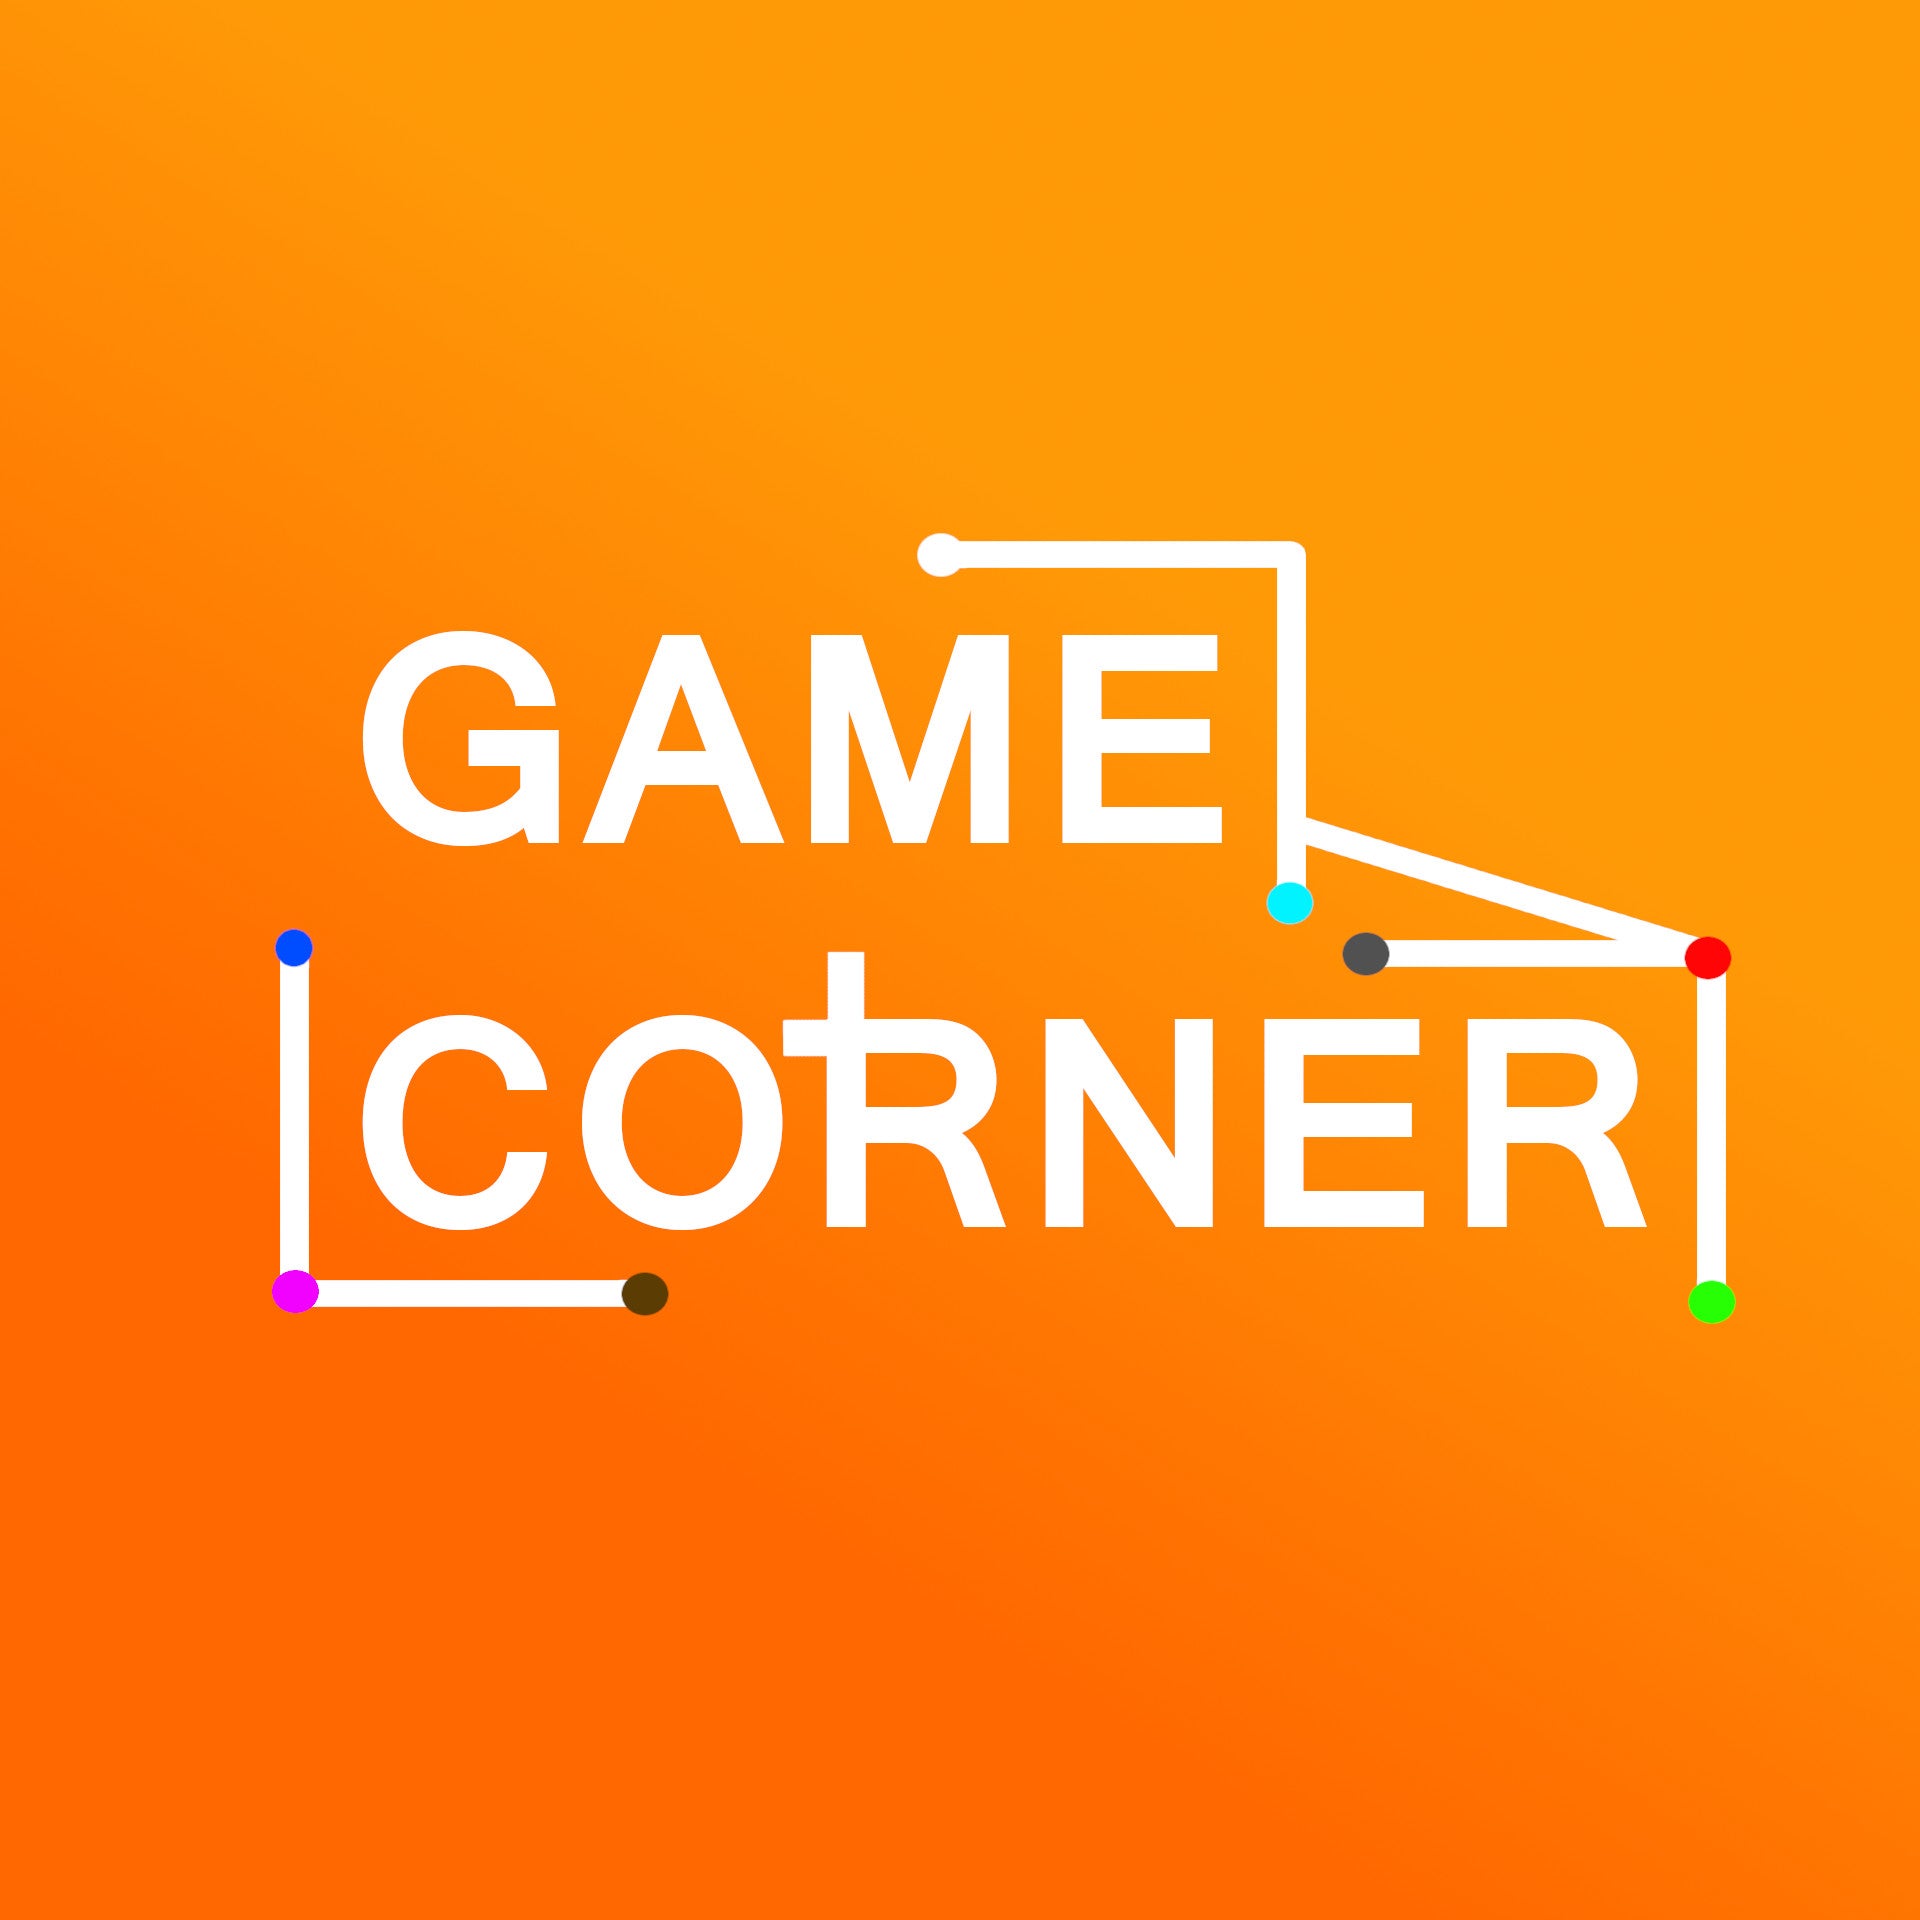 E Game Corner